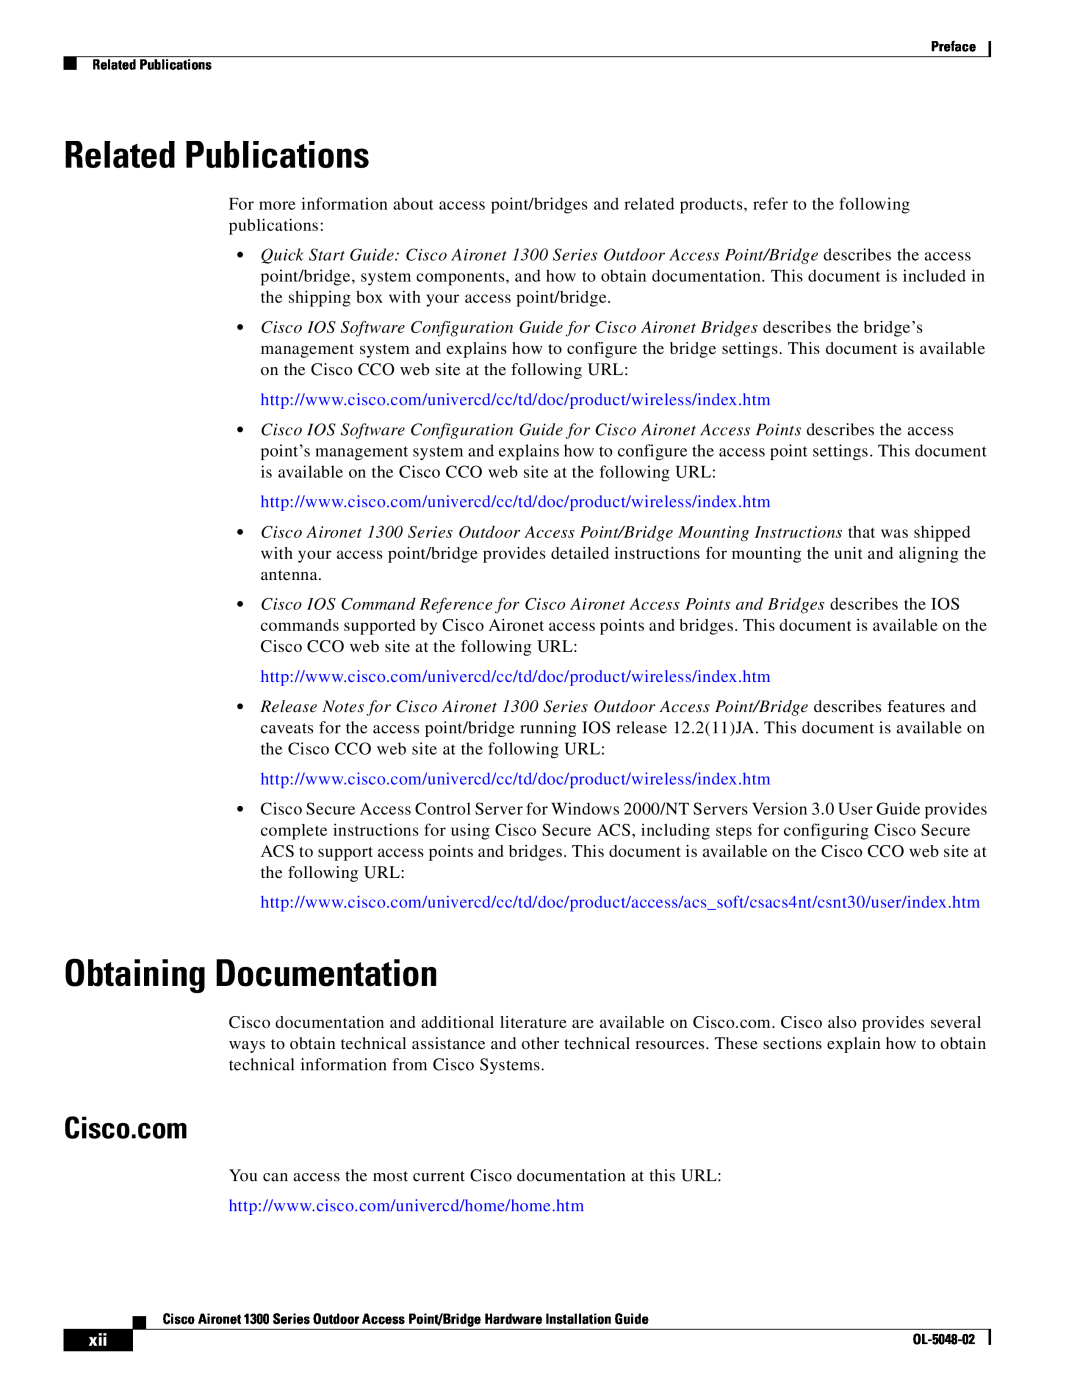 Cisco Systems 1300 Series manual Related Publications, Obtaining Documentation, Cisco.com 